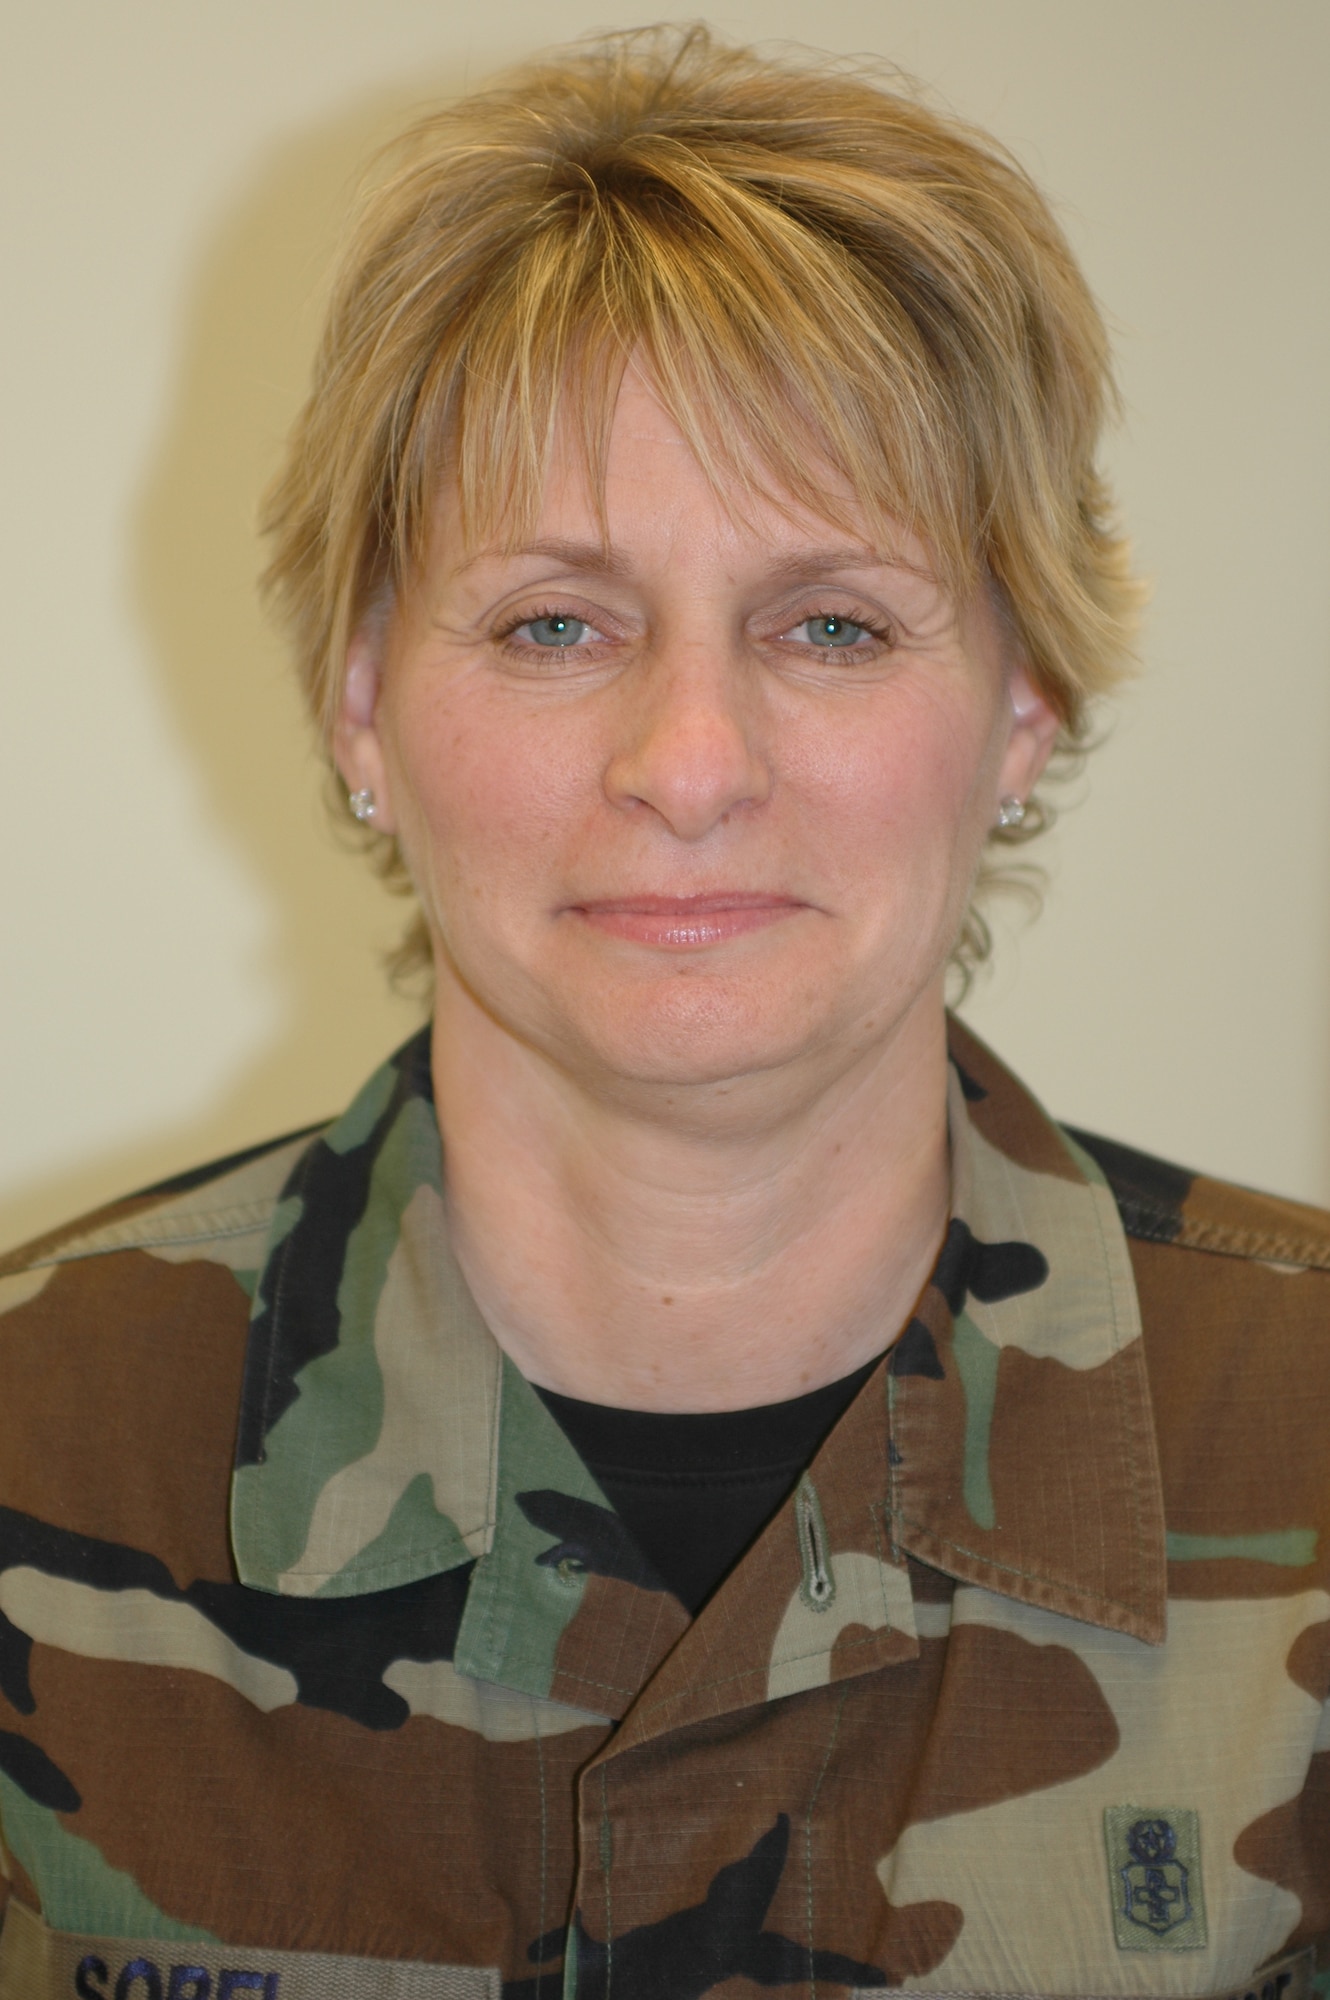 Senior Master Sgt. Michelle Sobel